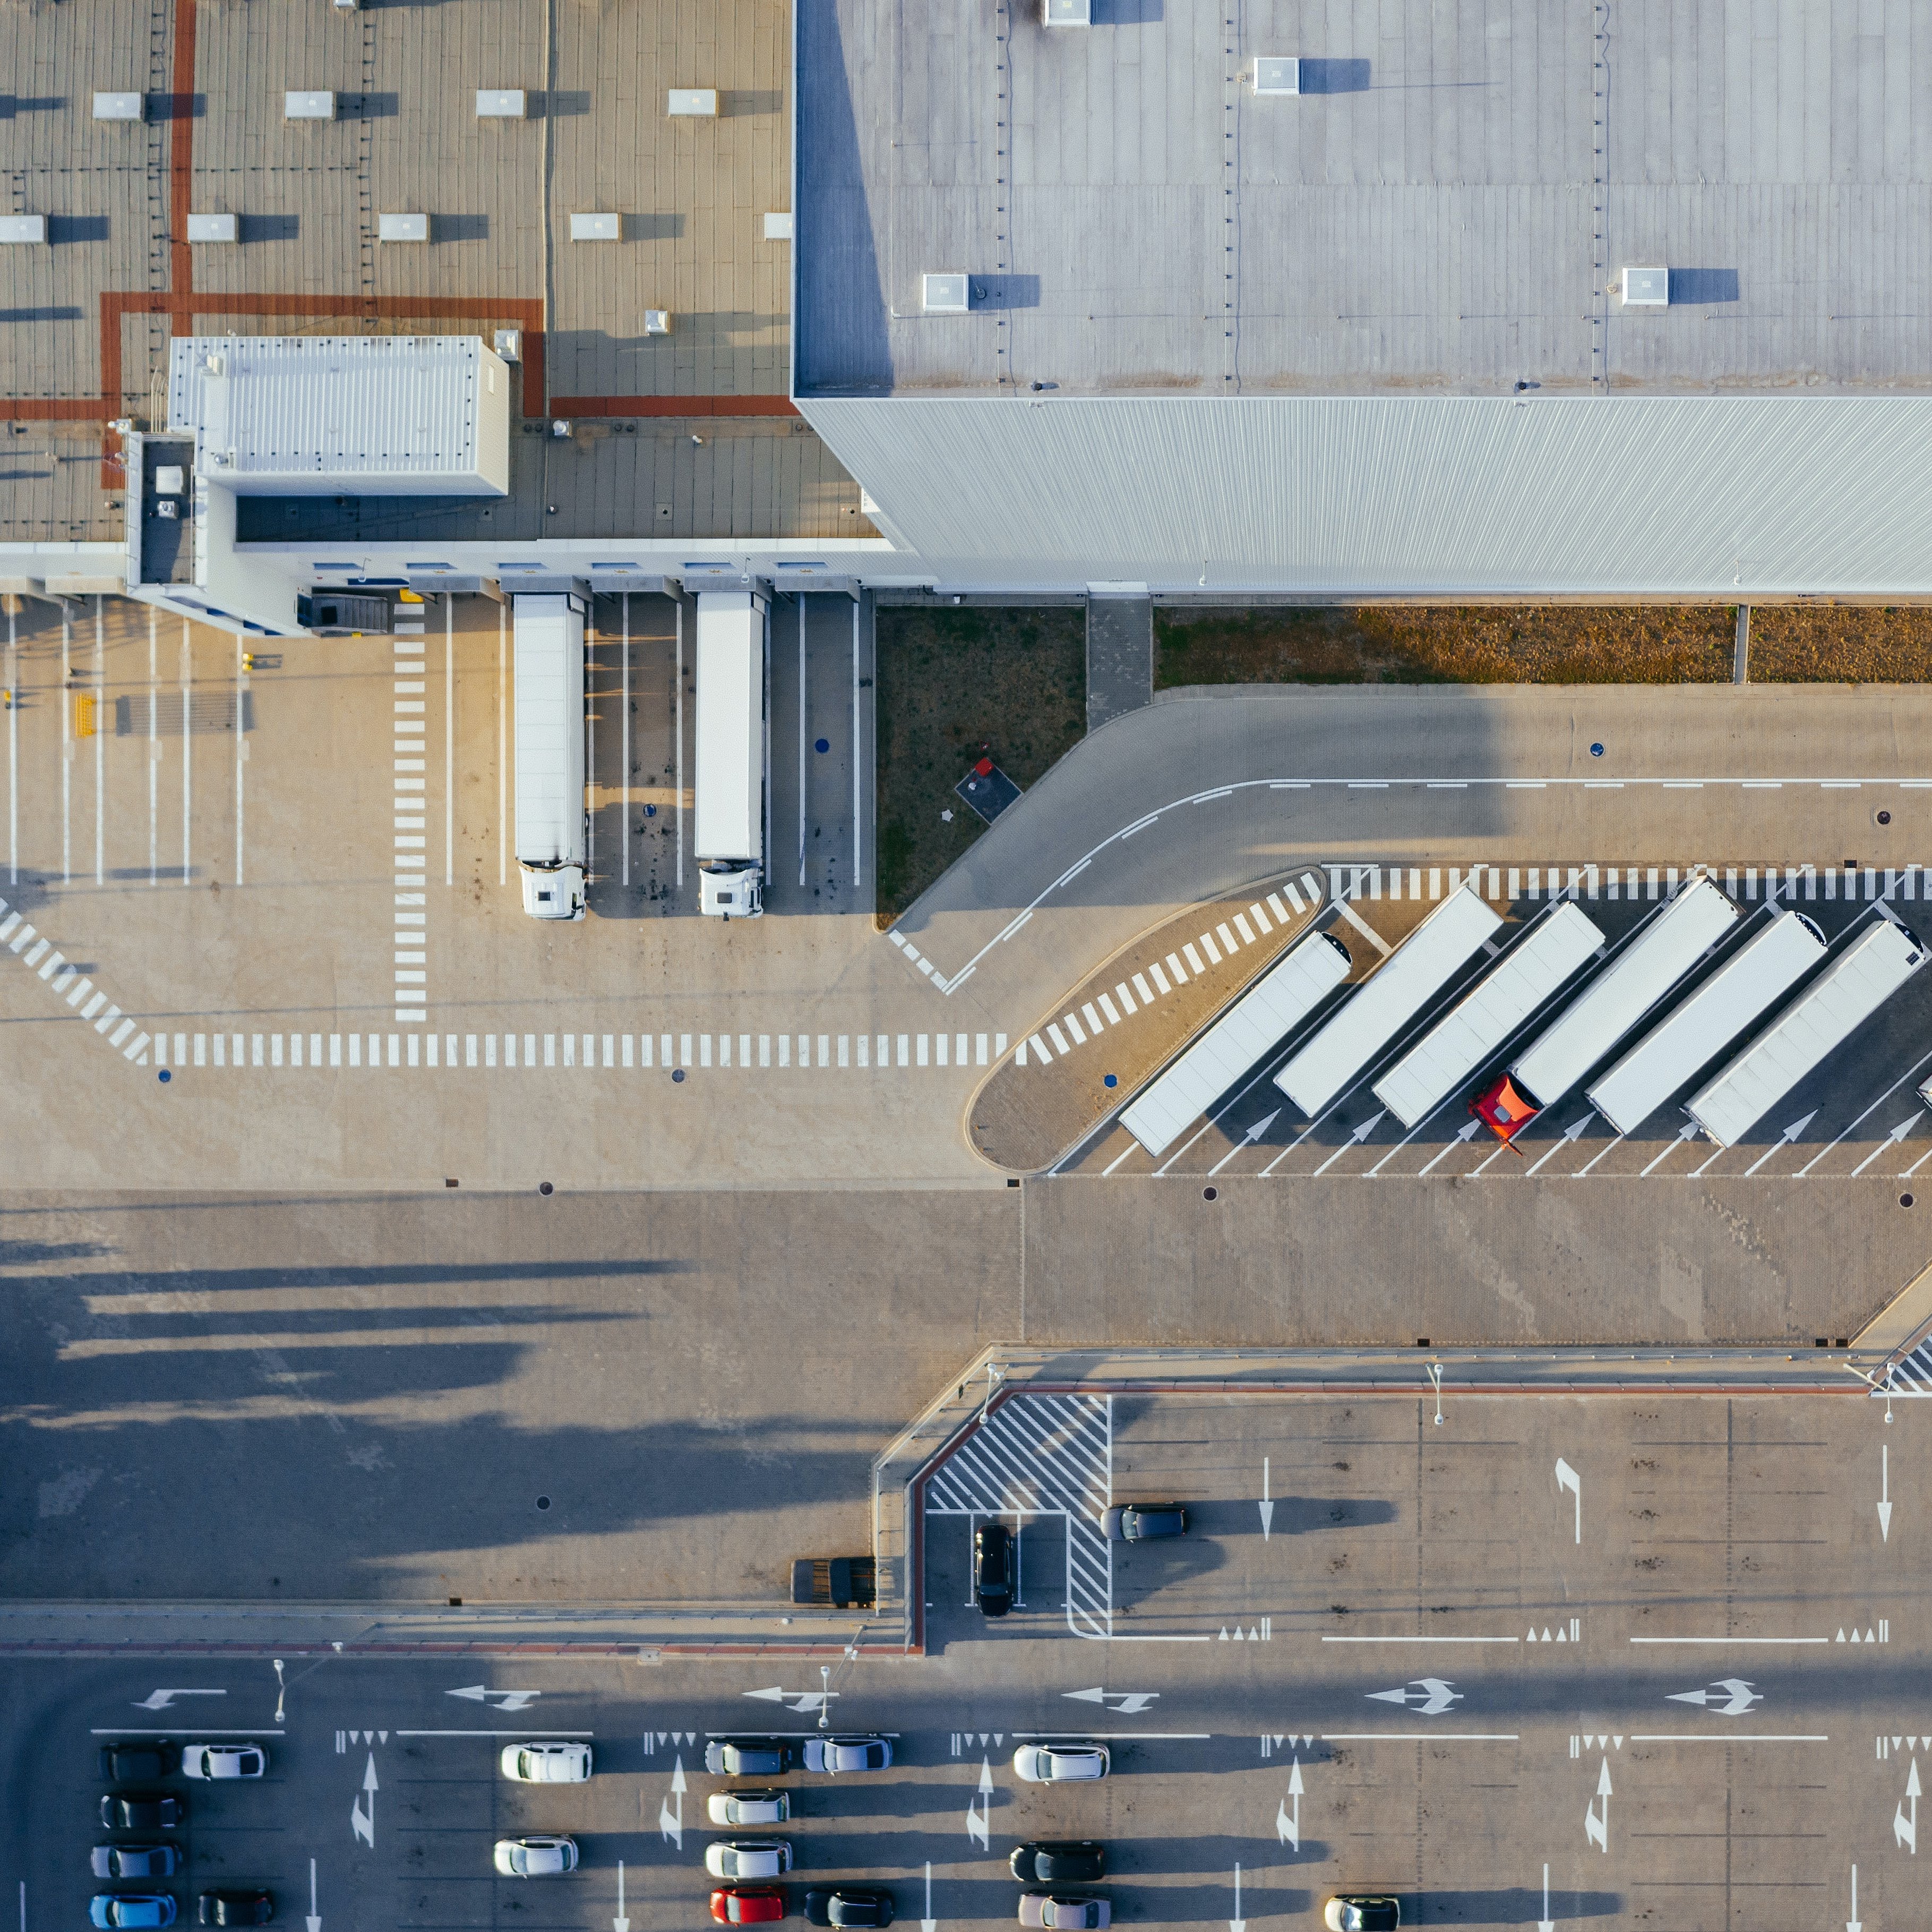 Logistikanlage aus der Vogelperspektive, LKW-Flotte und Logistikhalle sind zu sehen.